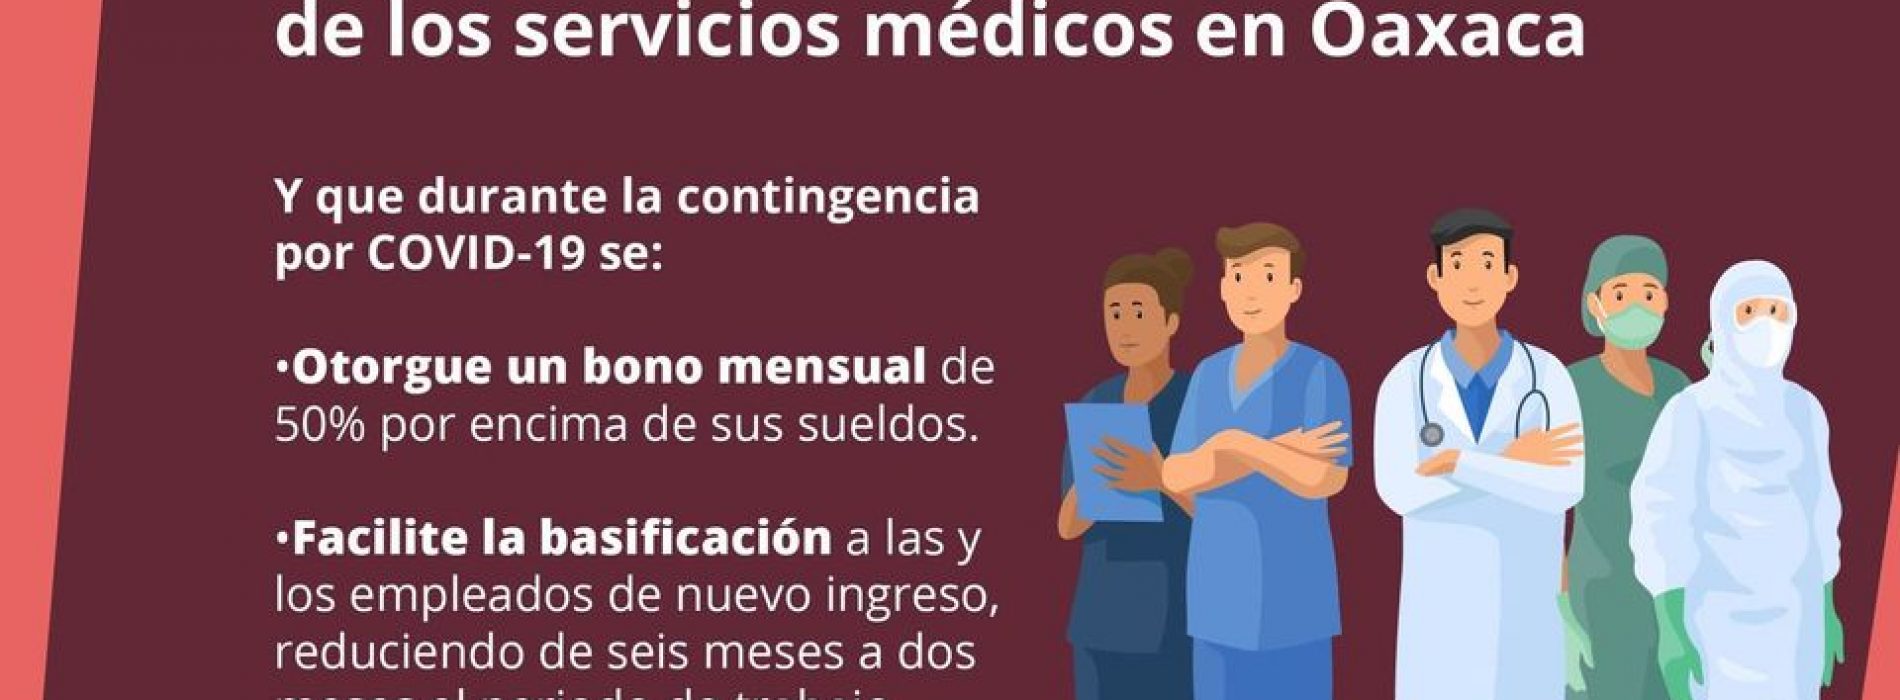 Propone Diputado Horacio Sosa basificación del personal médico en Oaxaca